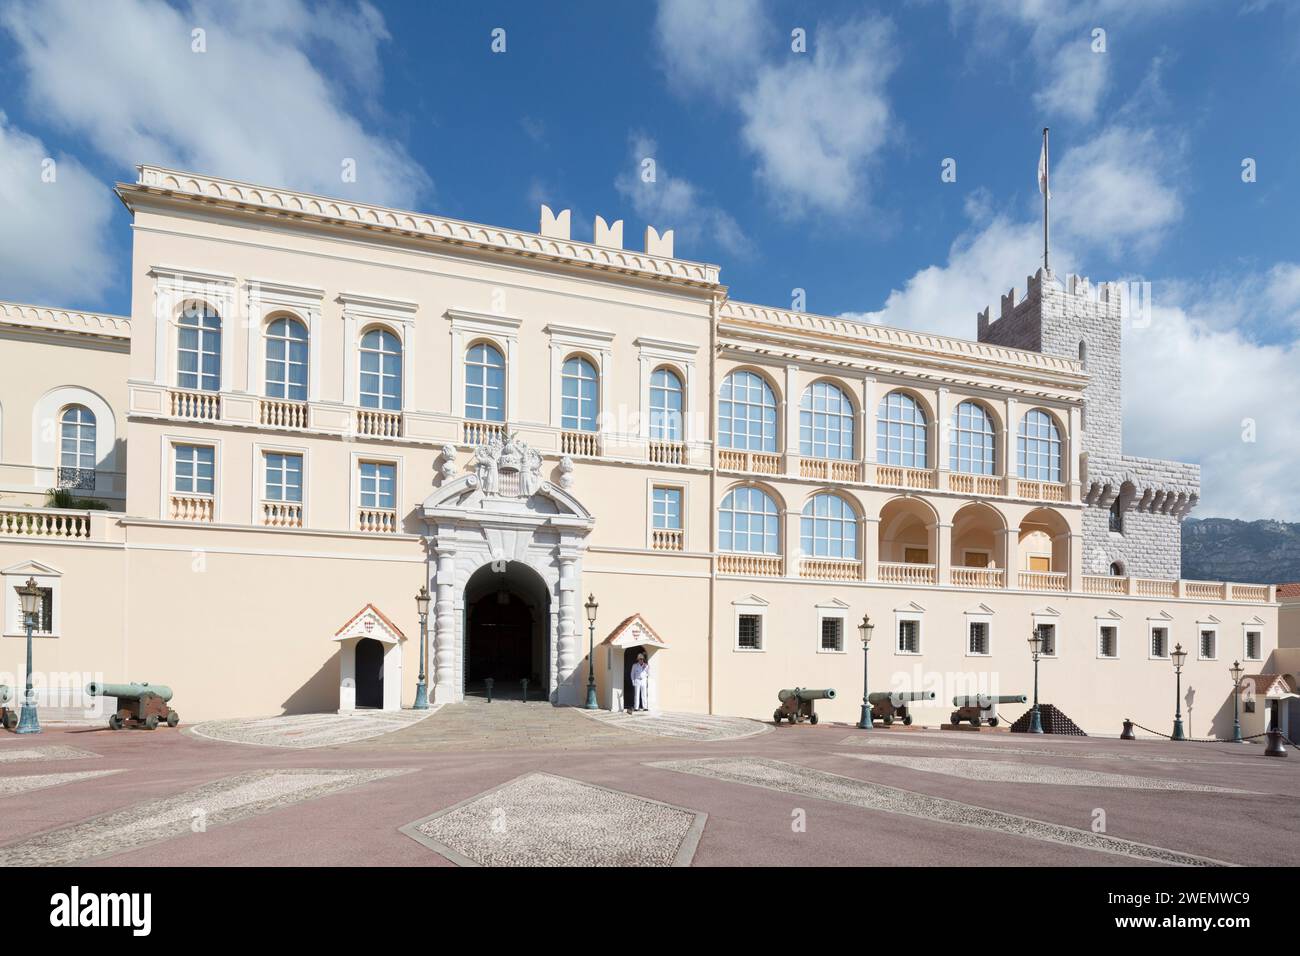 Monaco, des Prinzen Palast der Familie Grimaldi seit 1297. Die offizielle Residenz der Fürsten von Monaco. Stockfoto